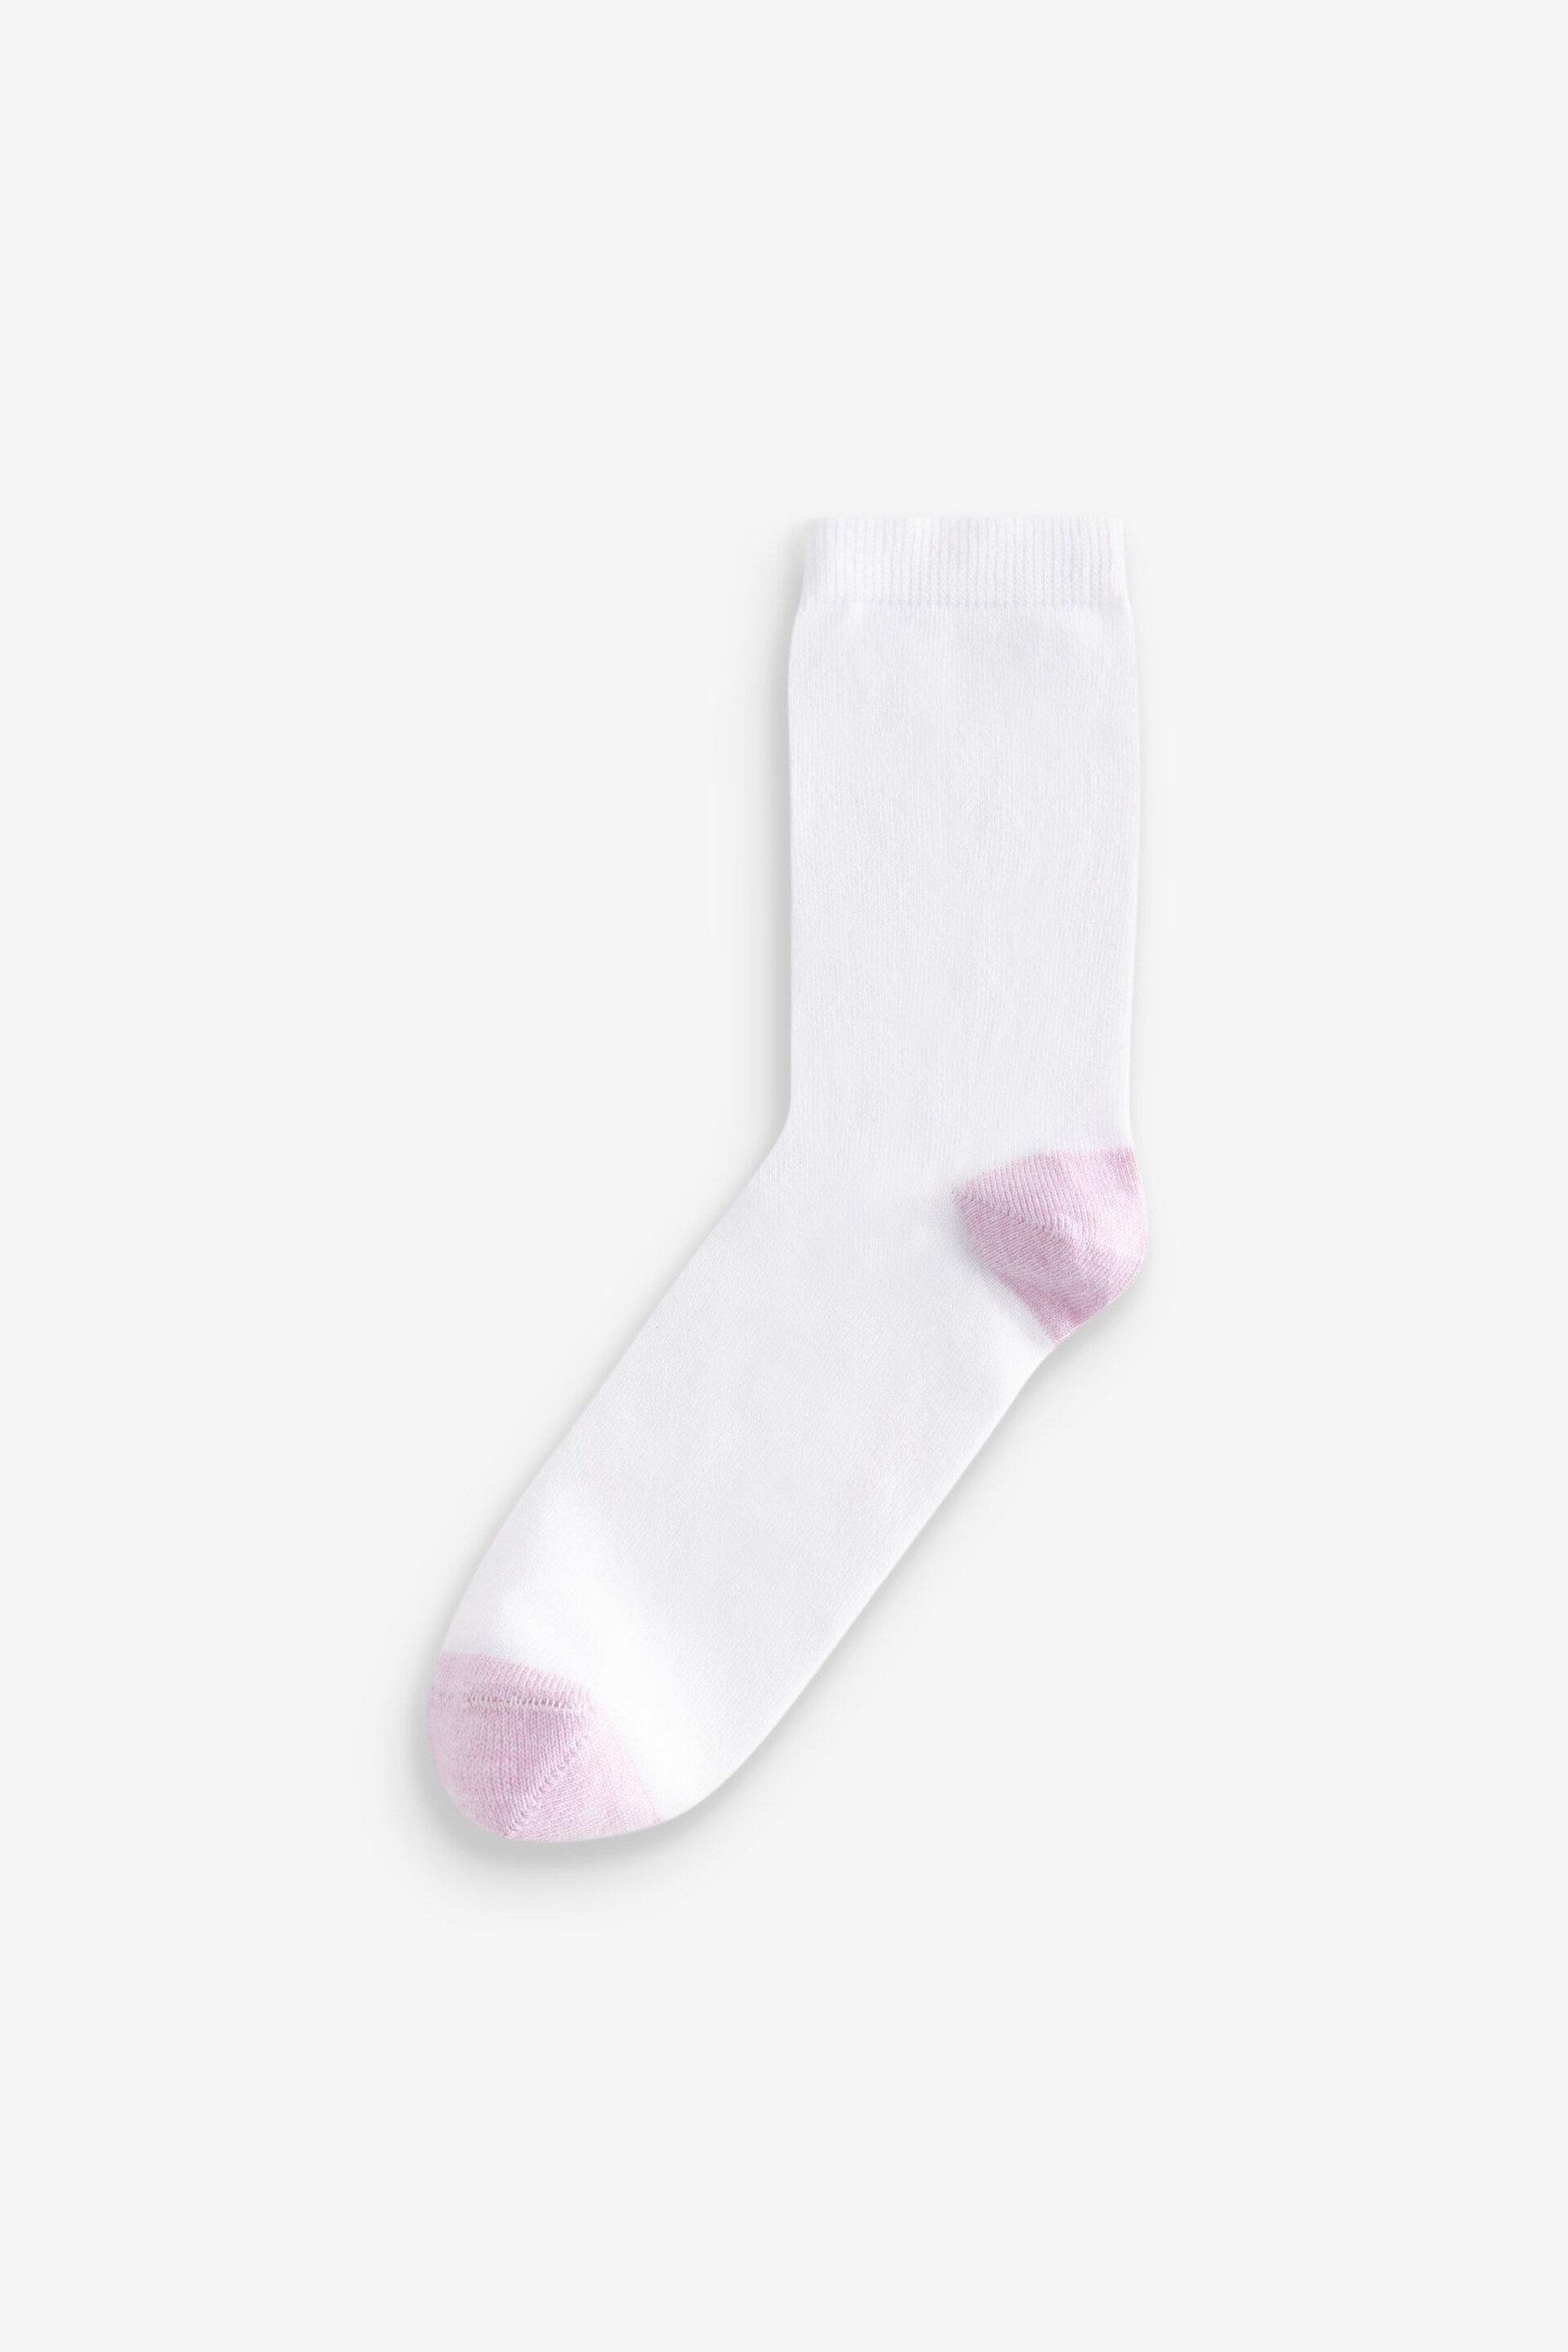 White Ankle Socks 4 Pack - Image 5 of 6